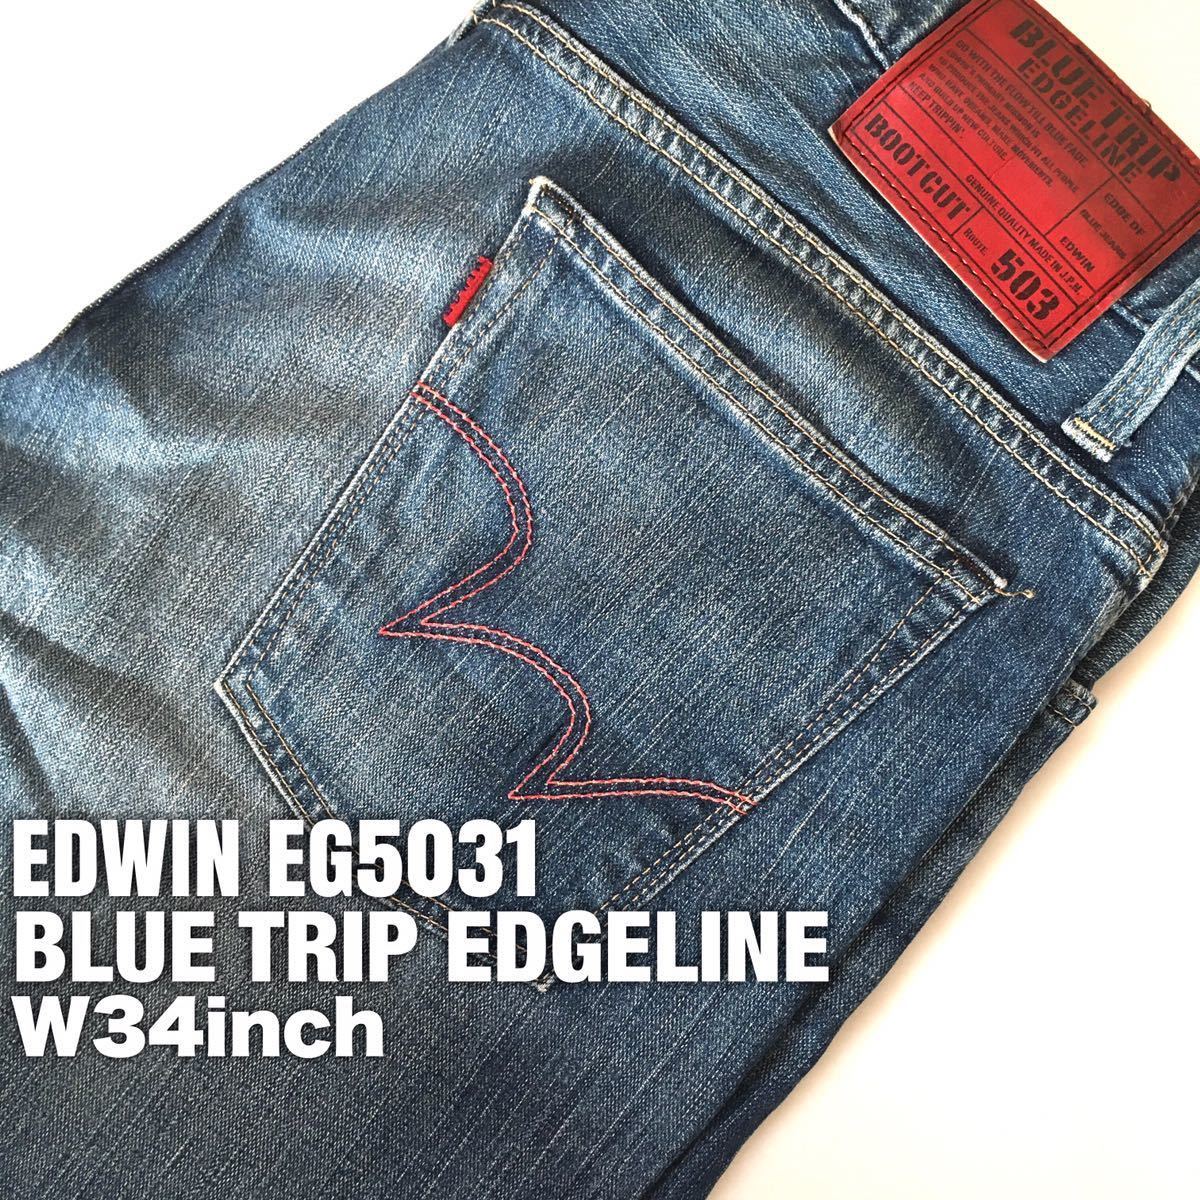 ★☆W34inch-86.36cm☆★EDWIN EG5031 BOOT CUT★☆EDWIN BLUE TRIP EDGELINE☆★_画像1